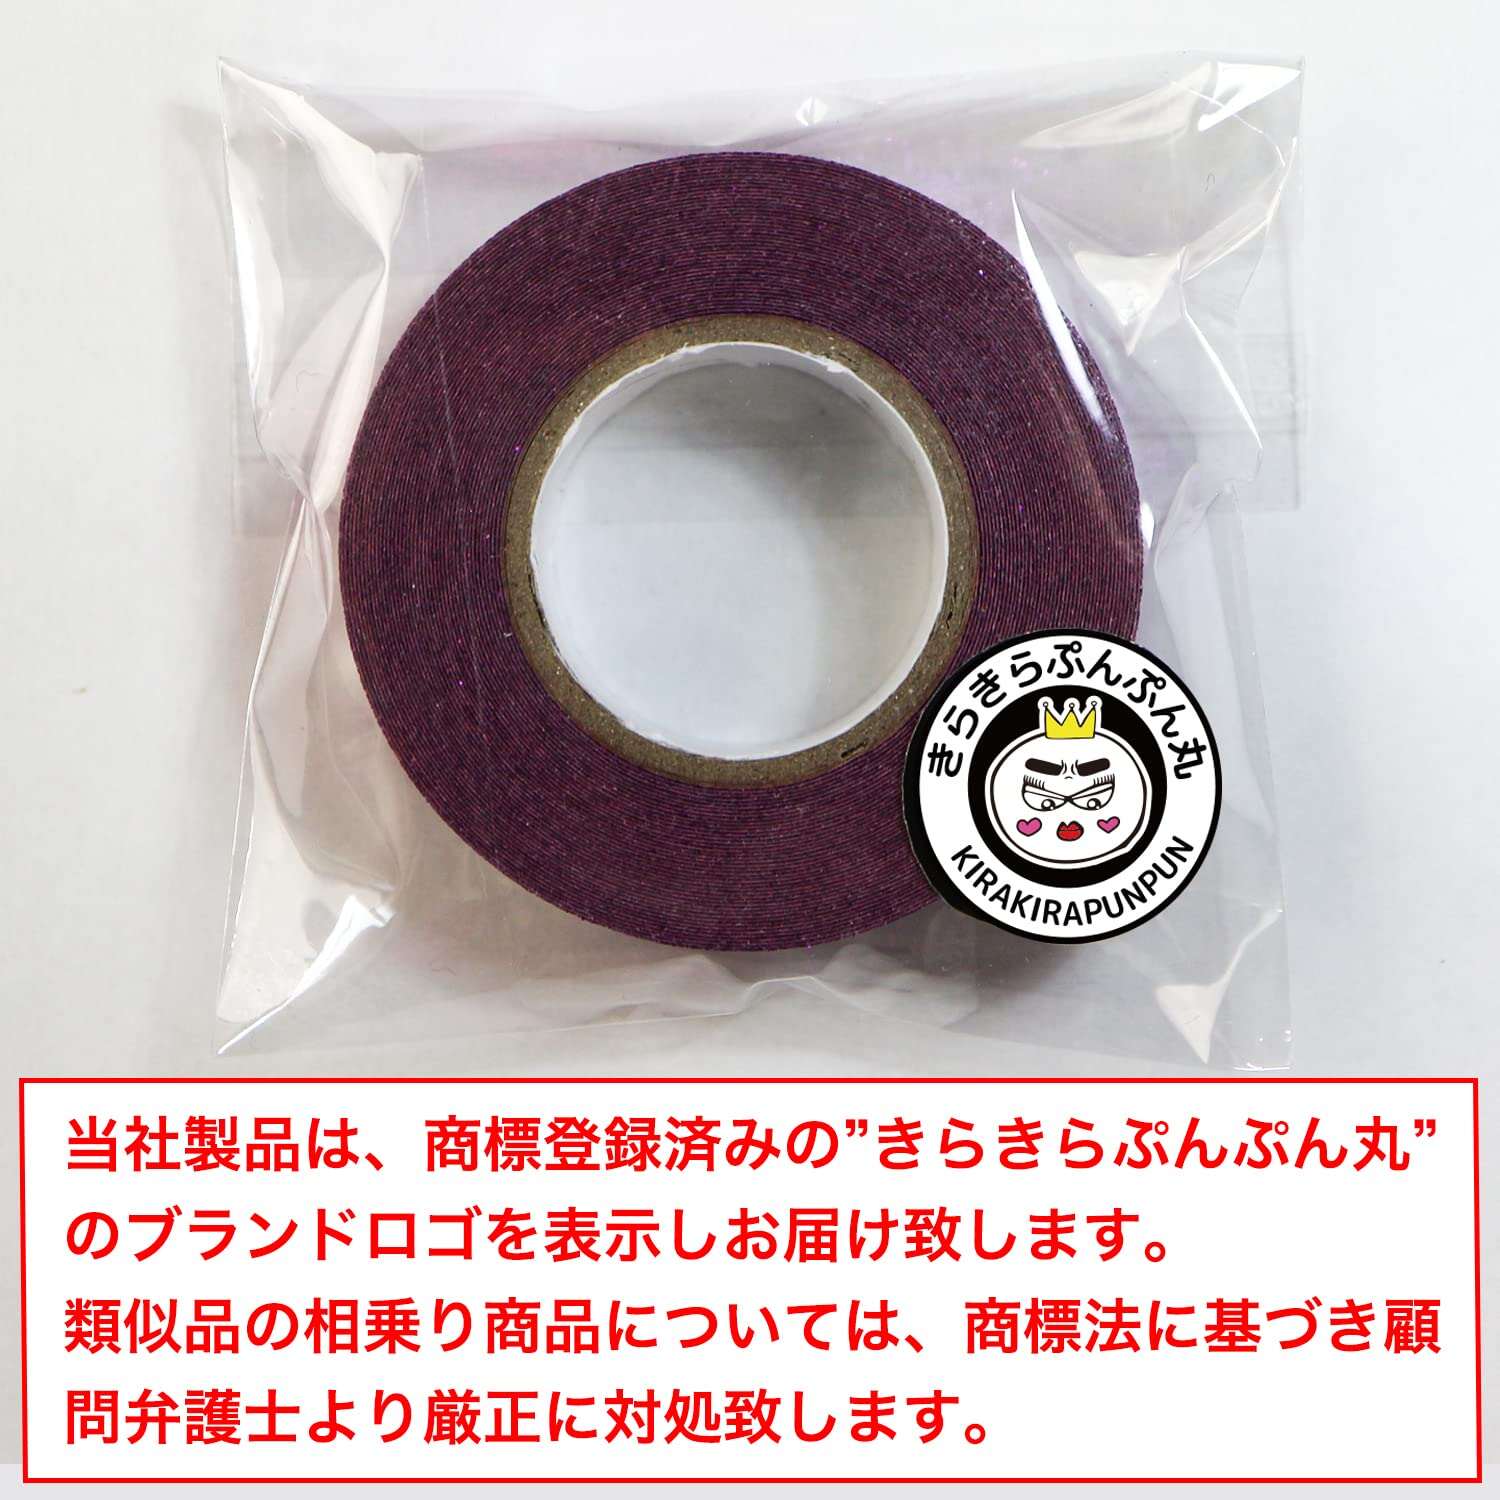 【グリッターテープ】キラキラ デコレーションシール マスキングテープ 紫 パープル 1巻 幅約15mm×長さ約5m きらきらぷんぷん丸 GT-010